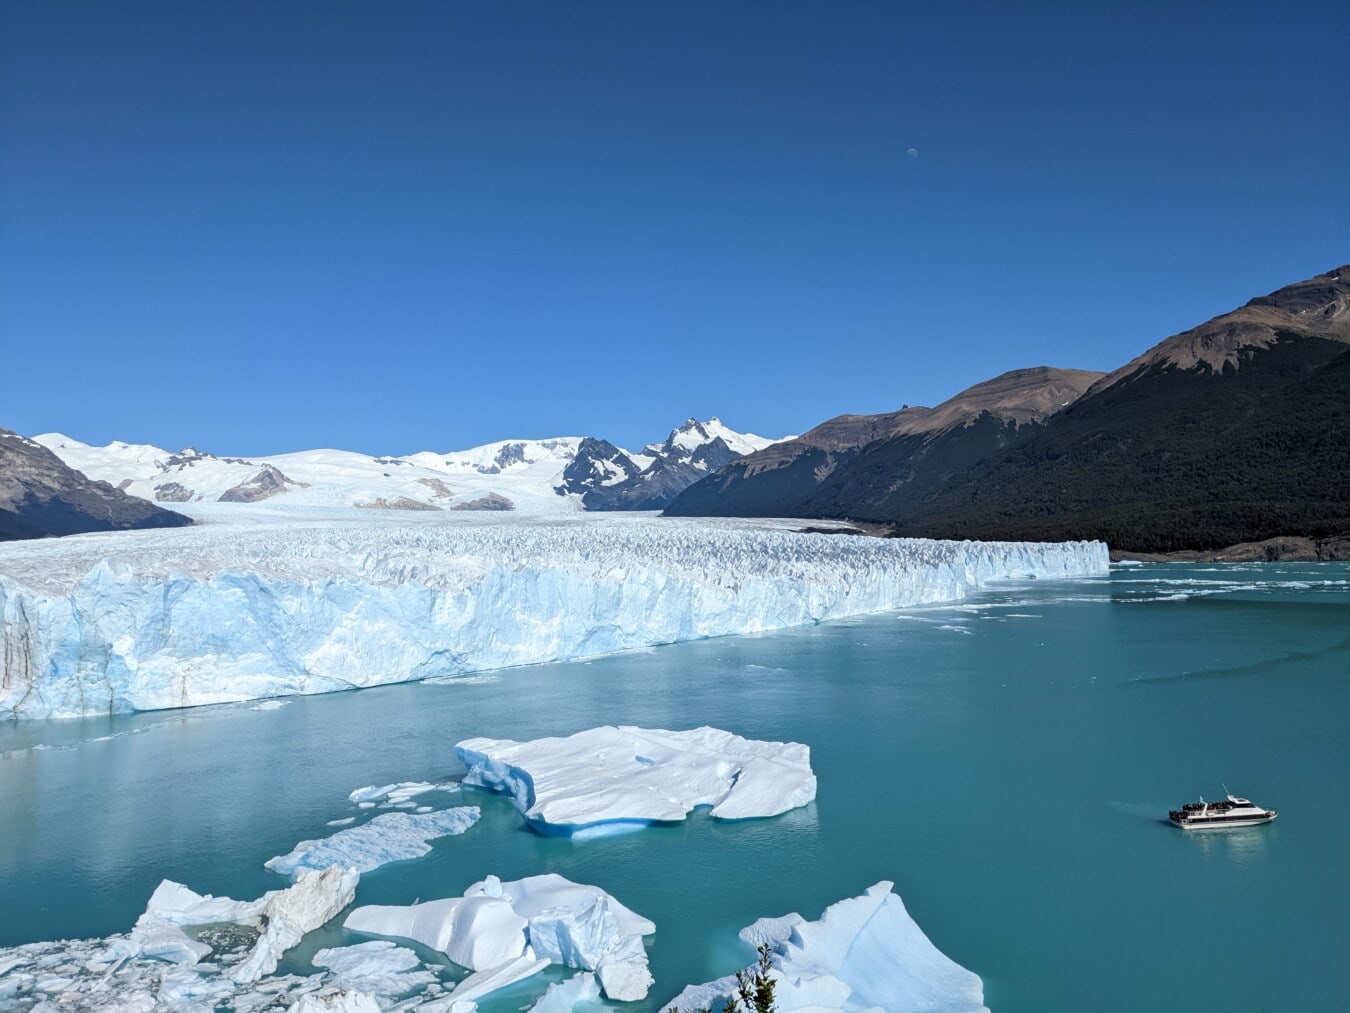 Tourisme, Glacier, navire de croisière, iceberg, hémisphère Nord, climatique, neige, eau, glace, montagnes